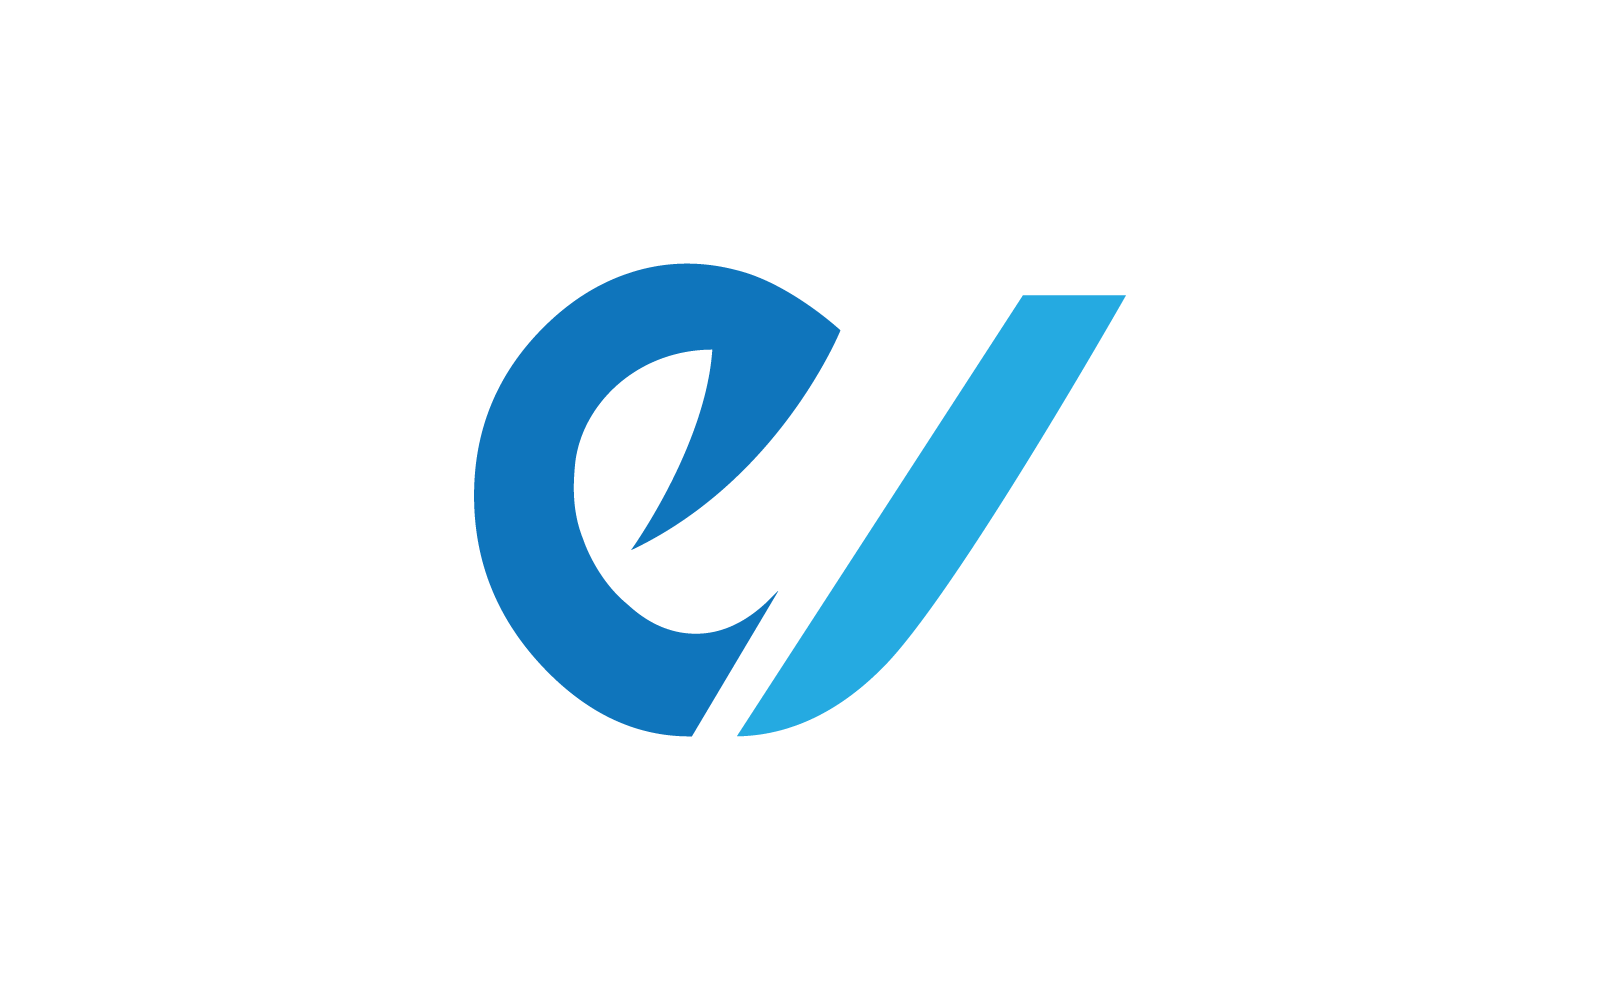 Moderne E Initial, letter, alfabet lettertype logo vector ontwerp